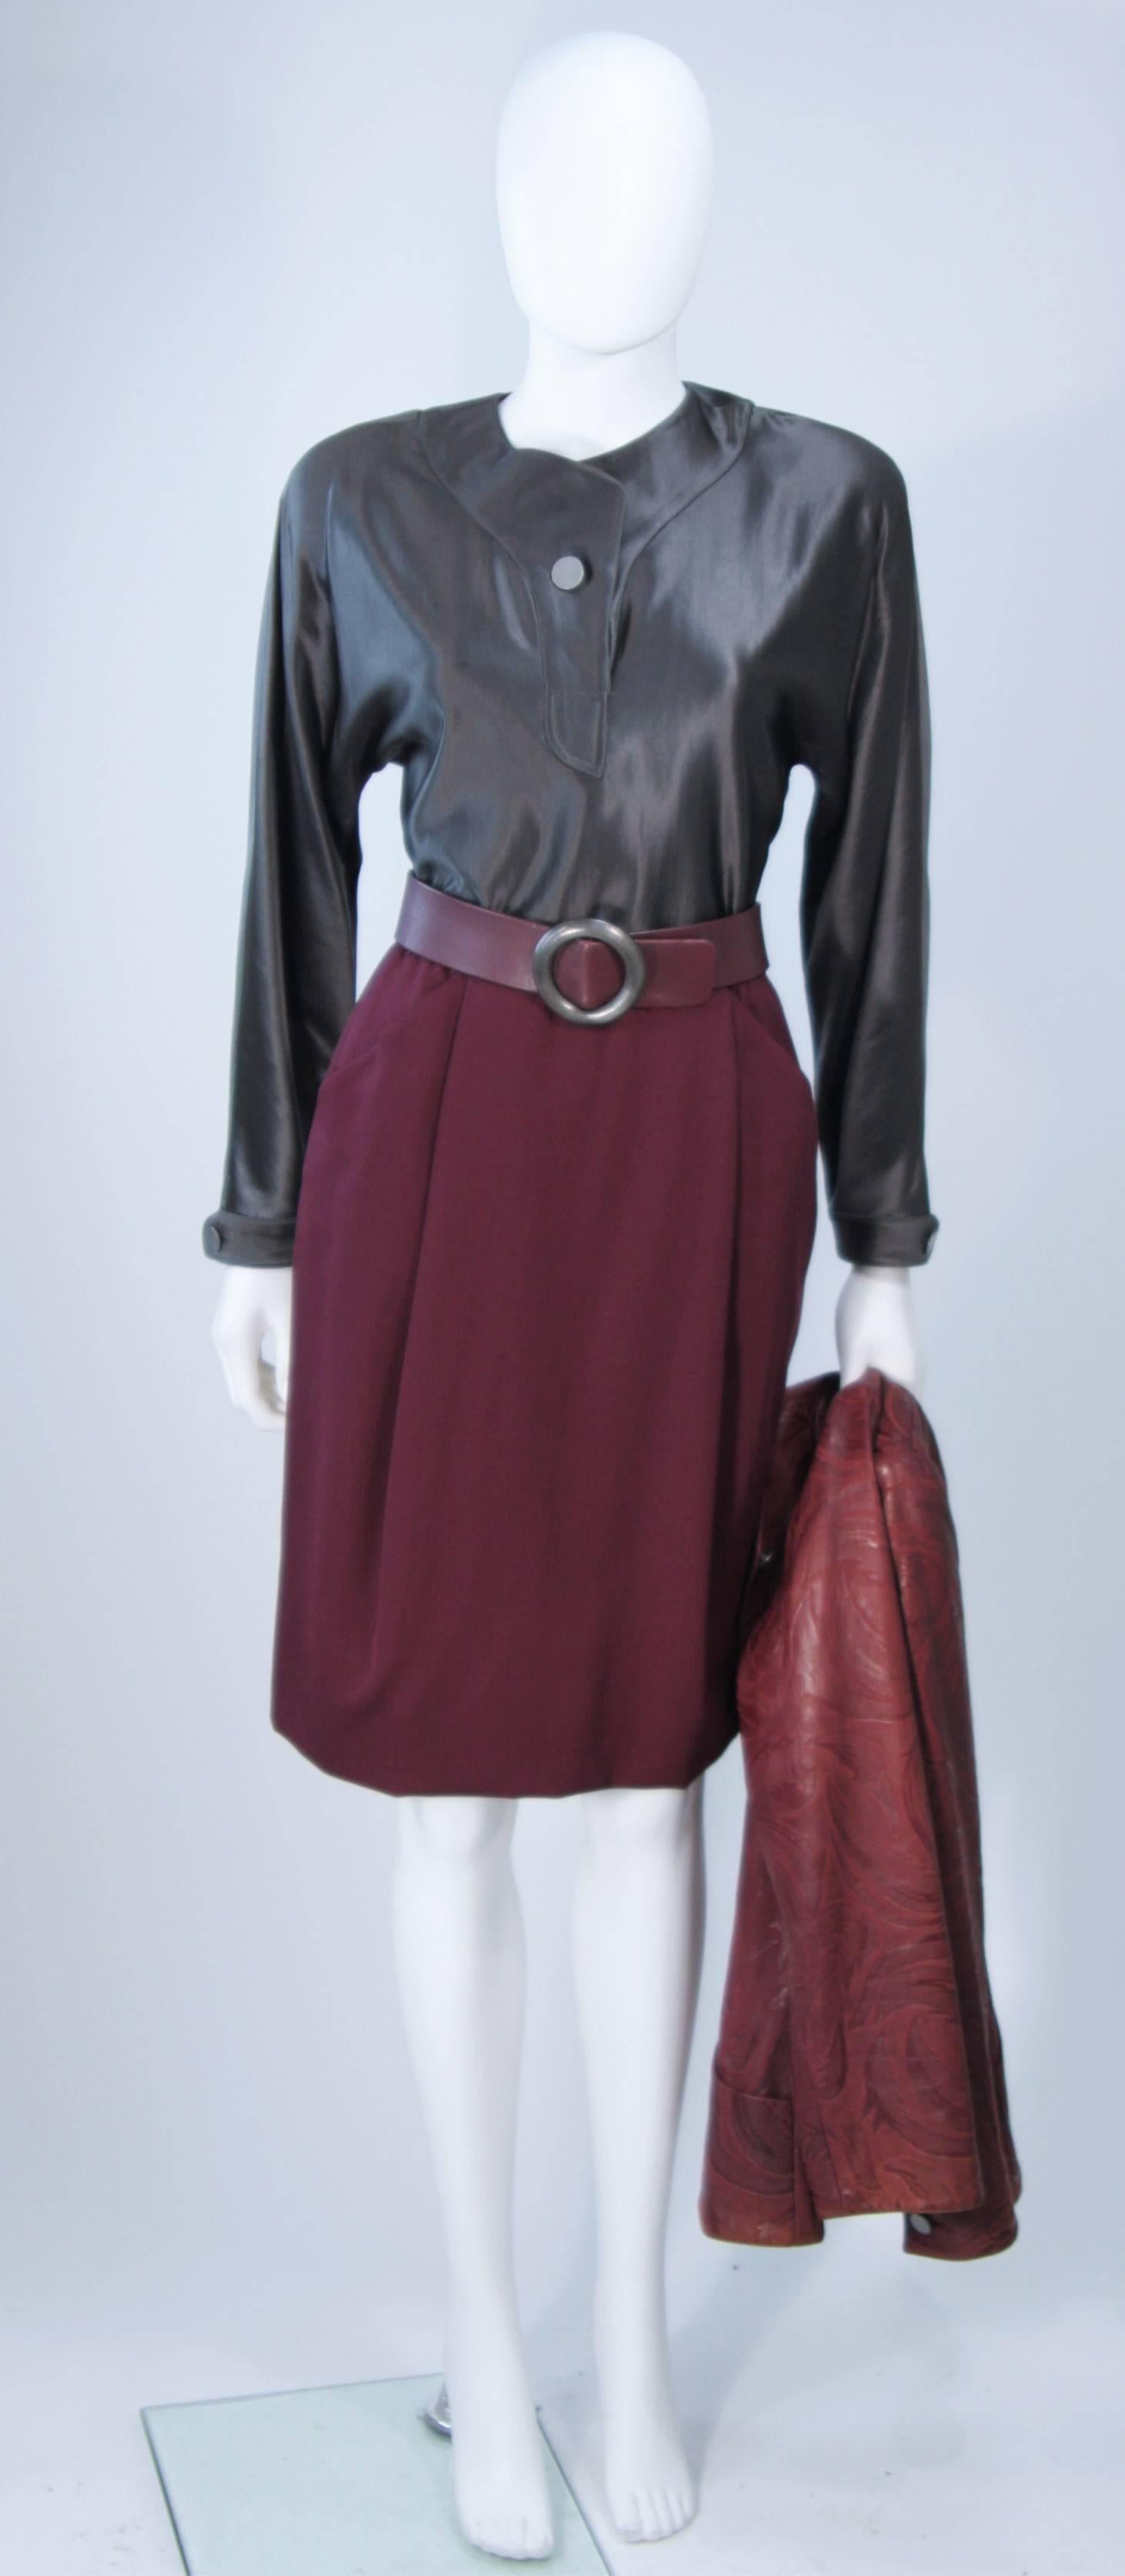 Black GEOFFREY BEENE Burgundy Embossed Suede Skirt Suit Ensemble Size 2-4